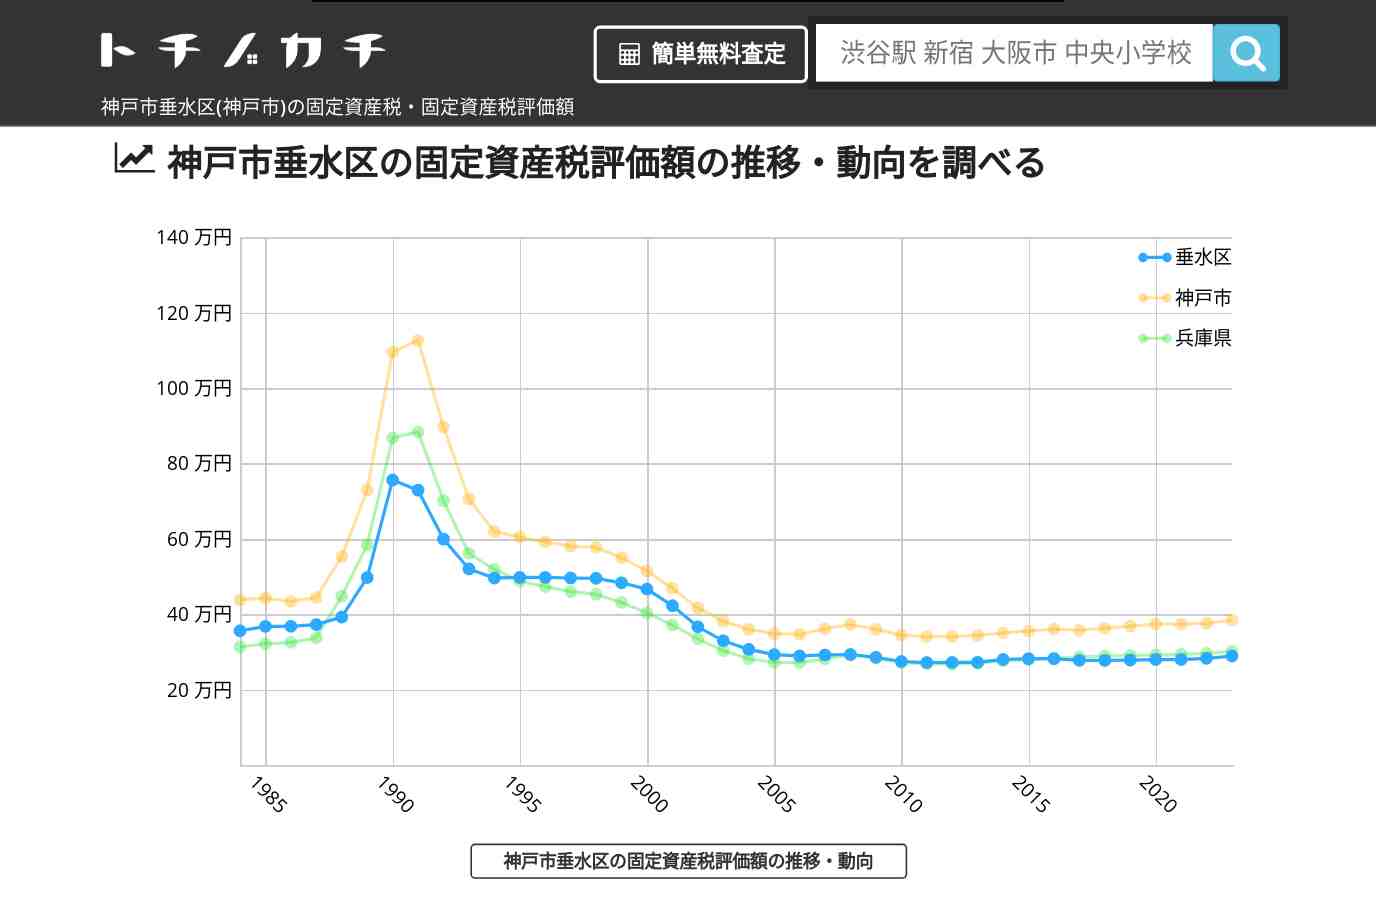 垂水中学校(兵庫県 神戸市 垂水区)周辺の固定資産税・固定資産税評価額 | トチノカチ